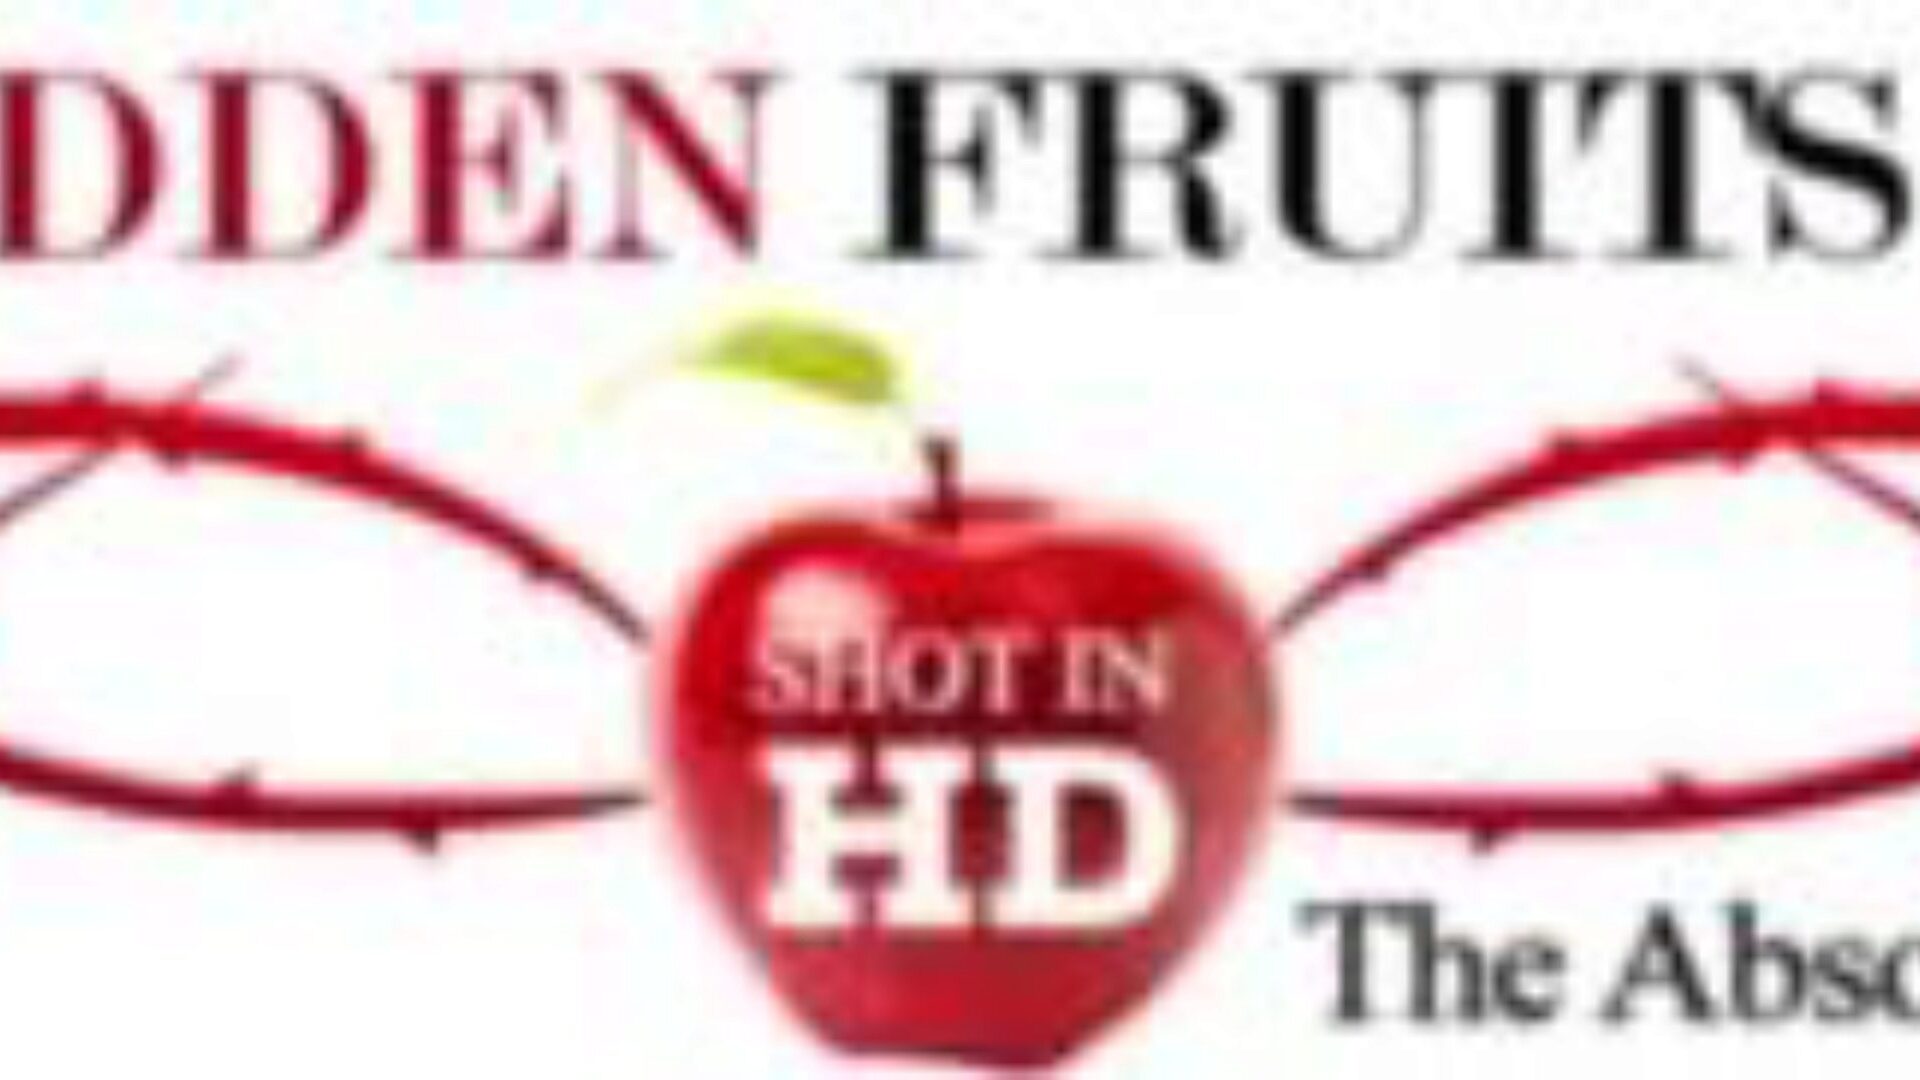 tiltott gyümölcsfilmek: jodi west kettős összeállt, miközben beragadt az ablakba